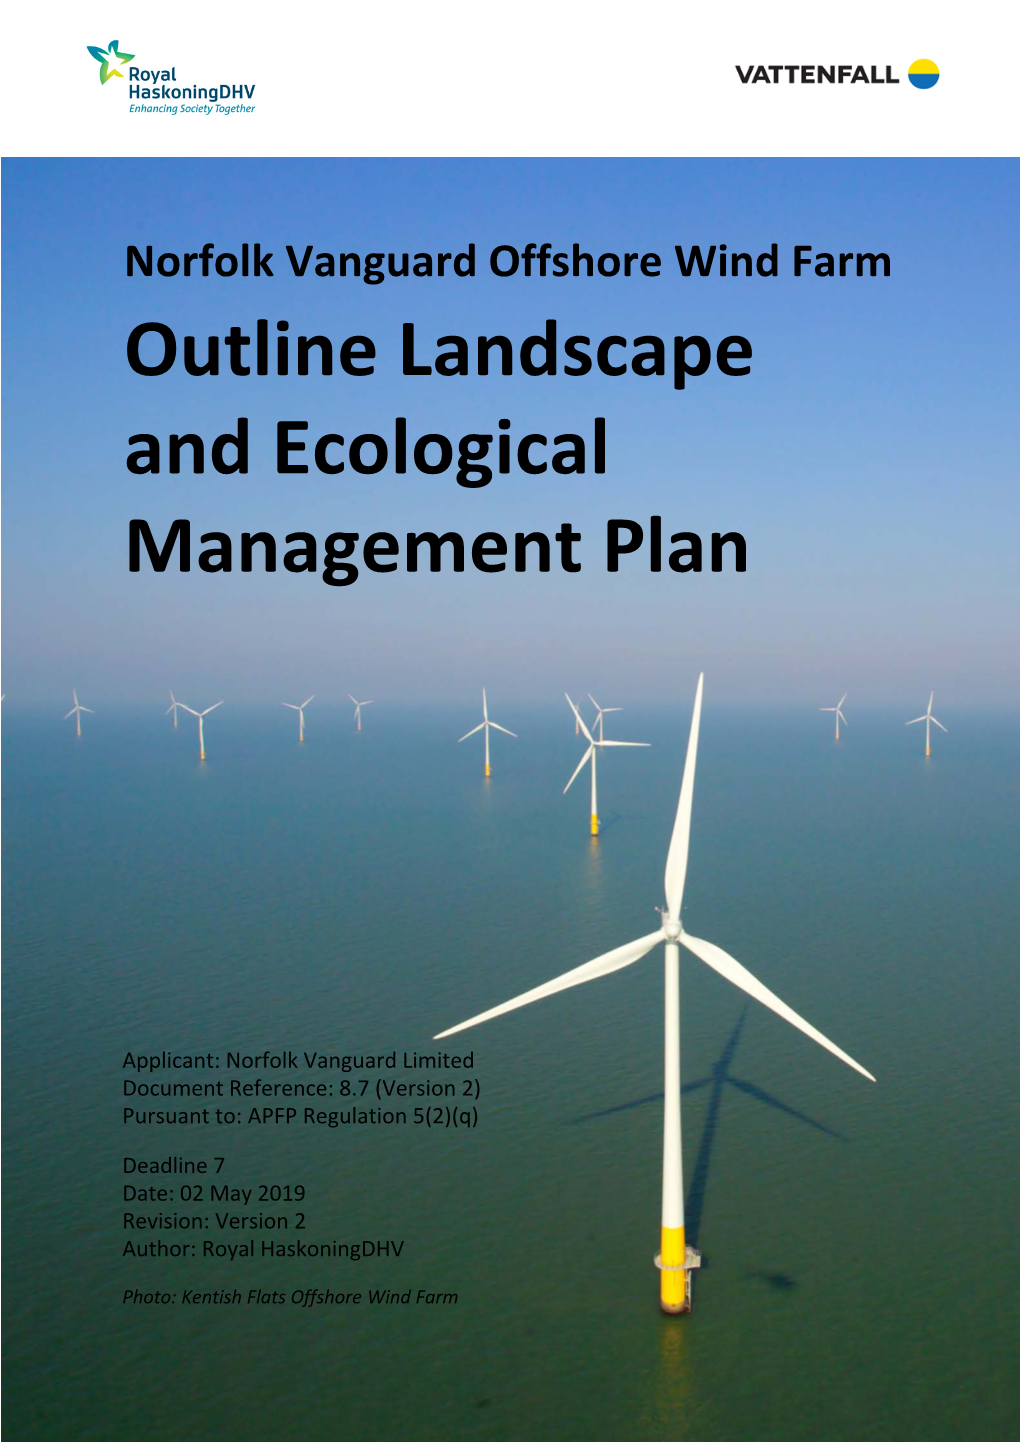 Outline Landscape and Ecological Management Plan